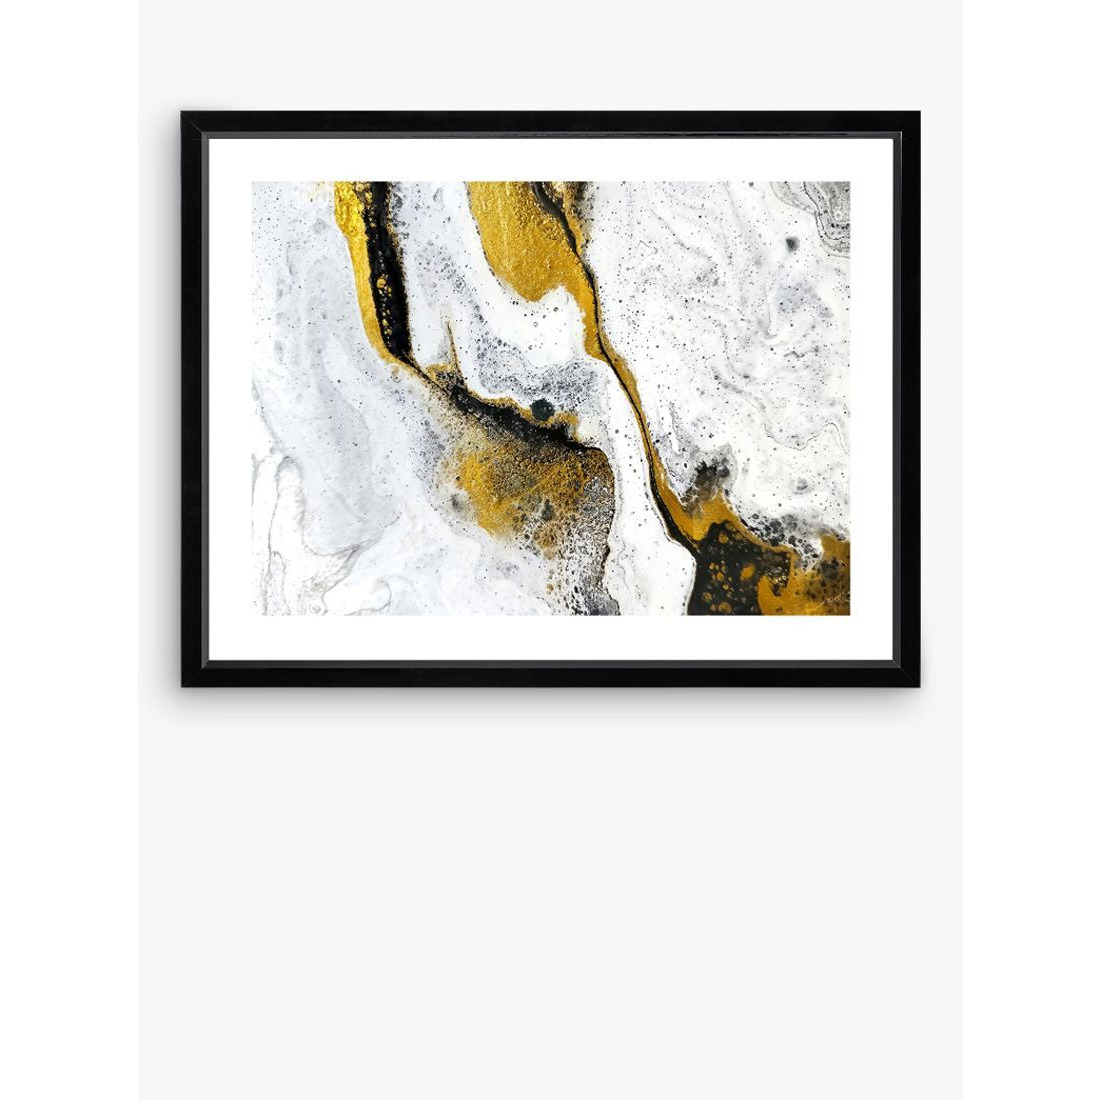 Marble 2 - Framed Print & Mount, 66 x 86cm, White - image 1